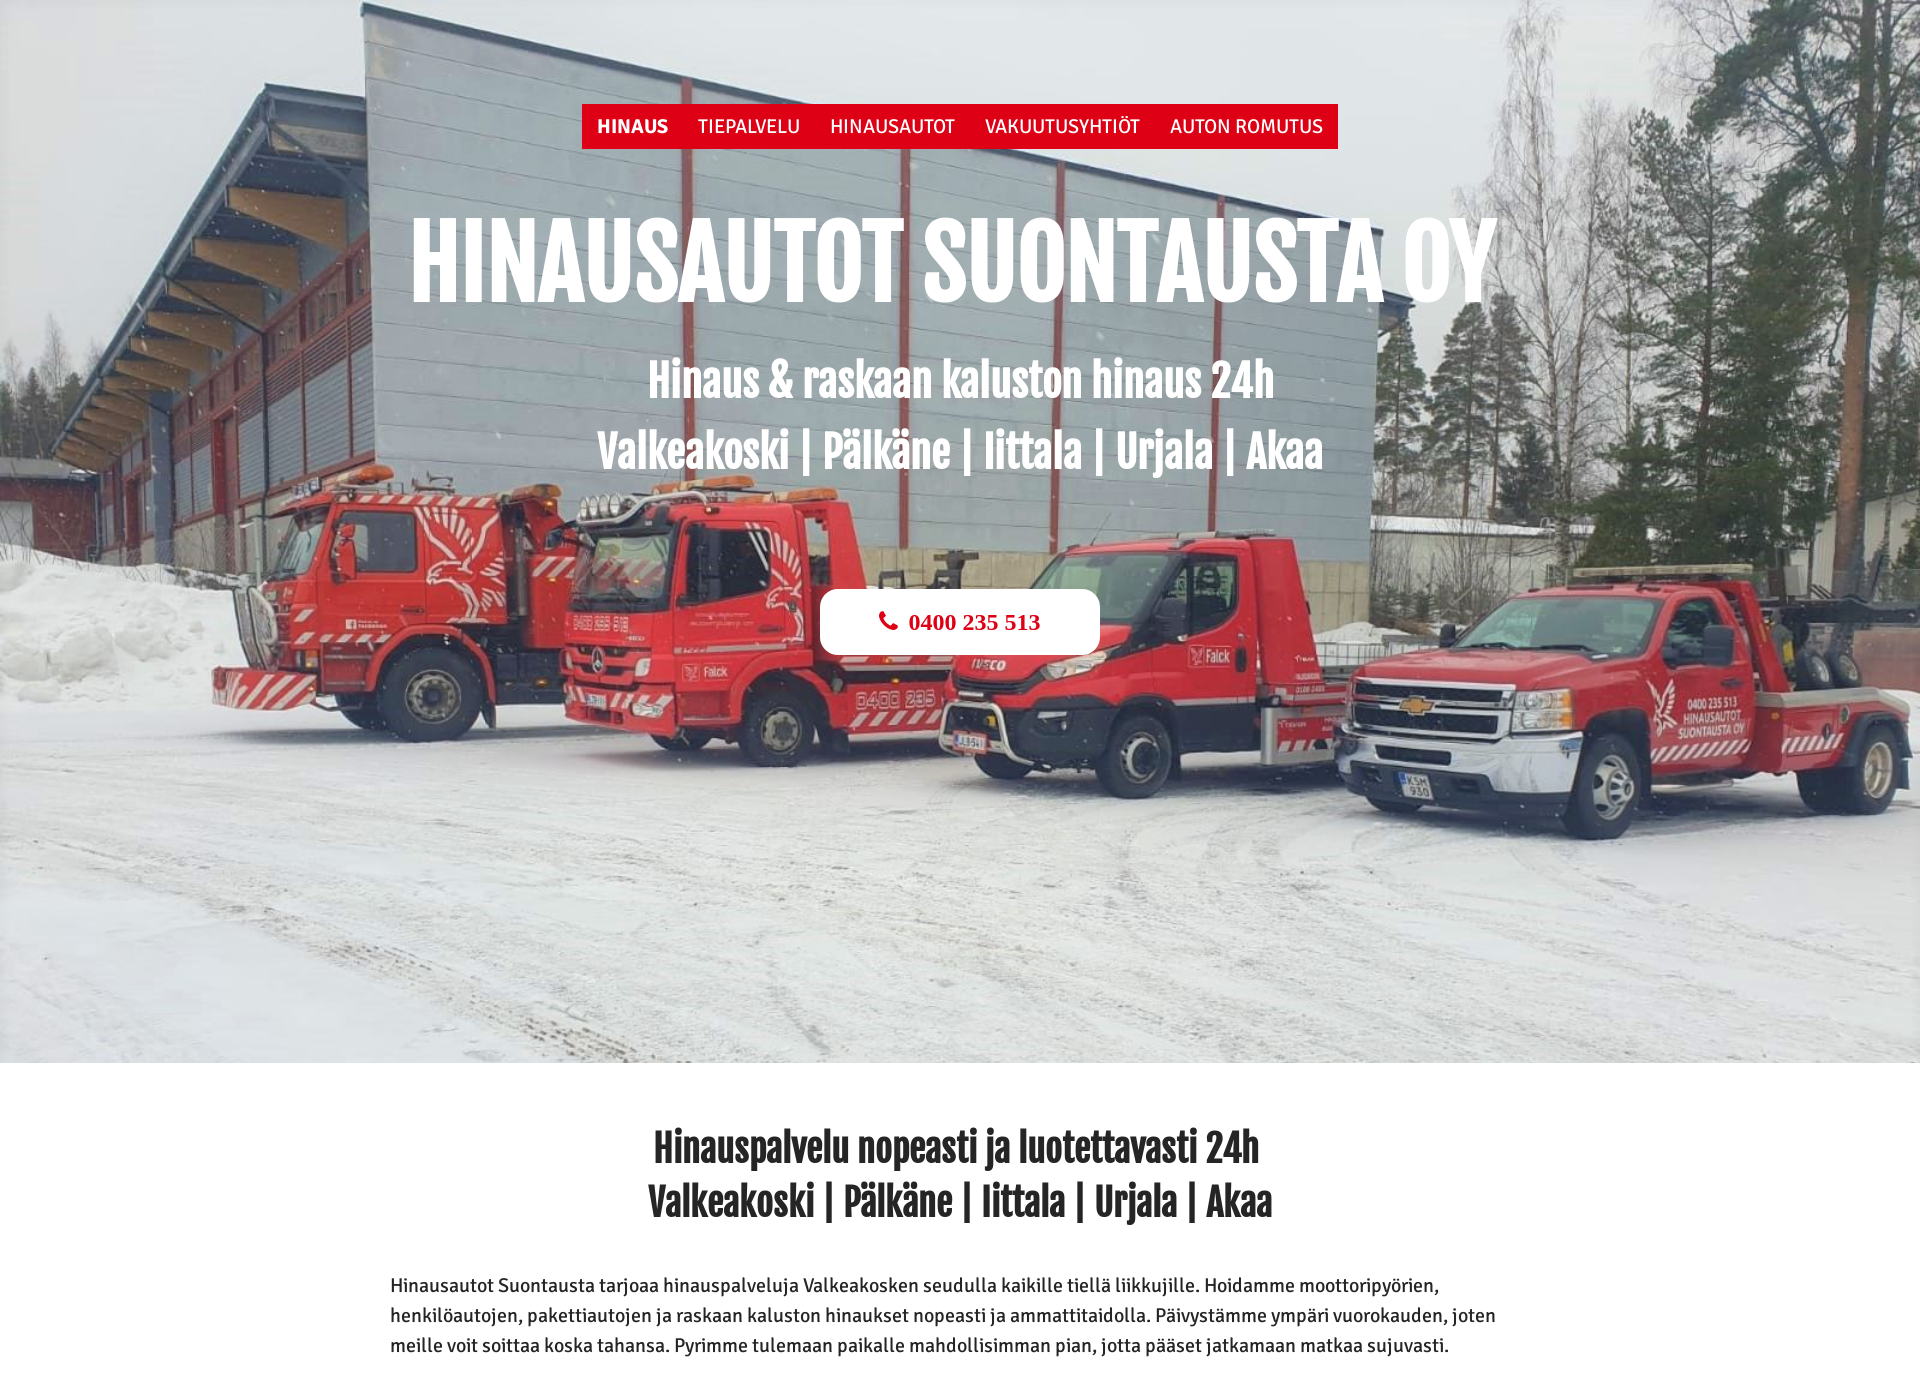 Näyttökuva hinausautotsuontaustaoy.fi